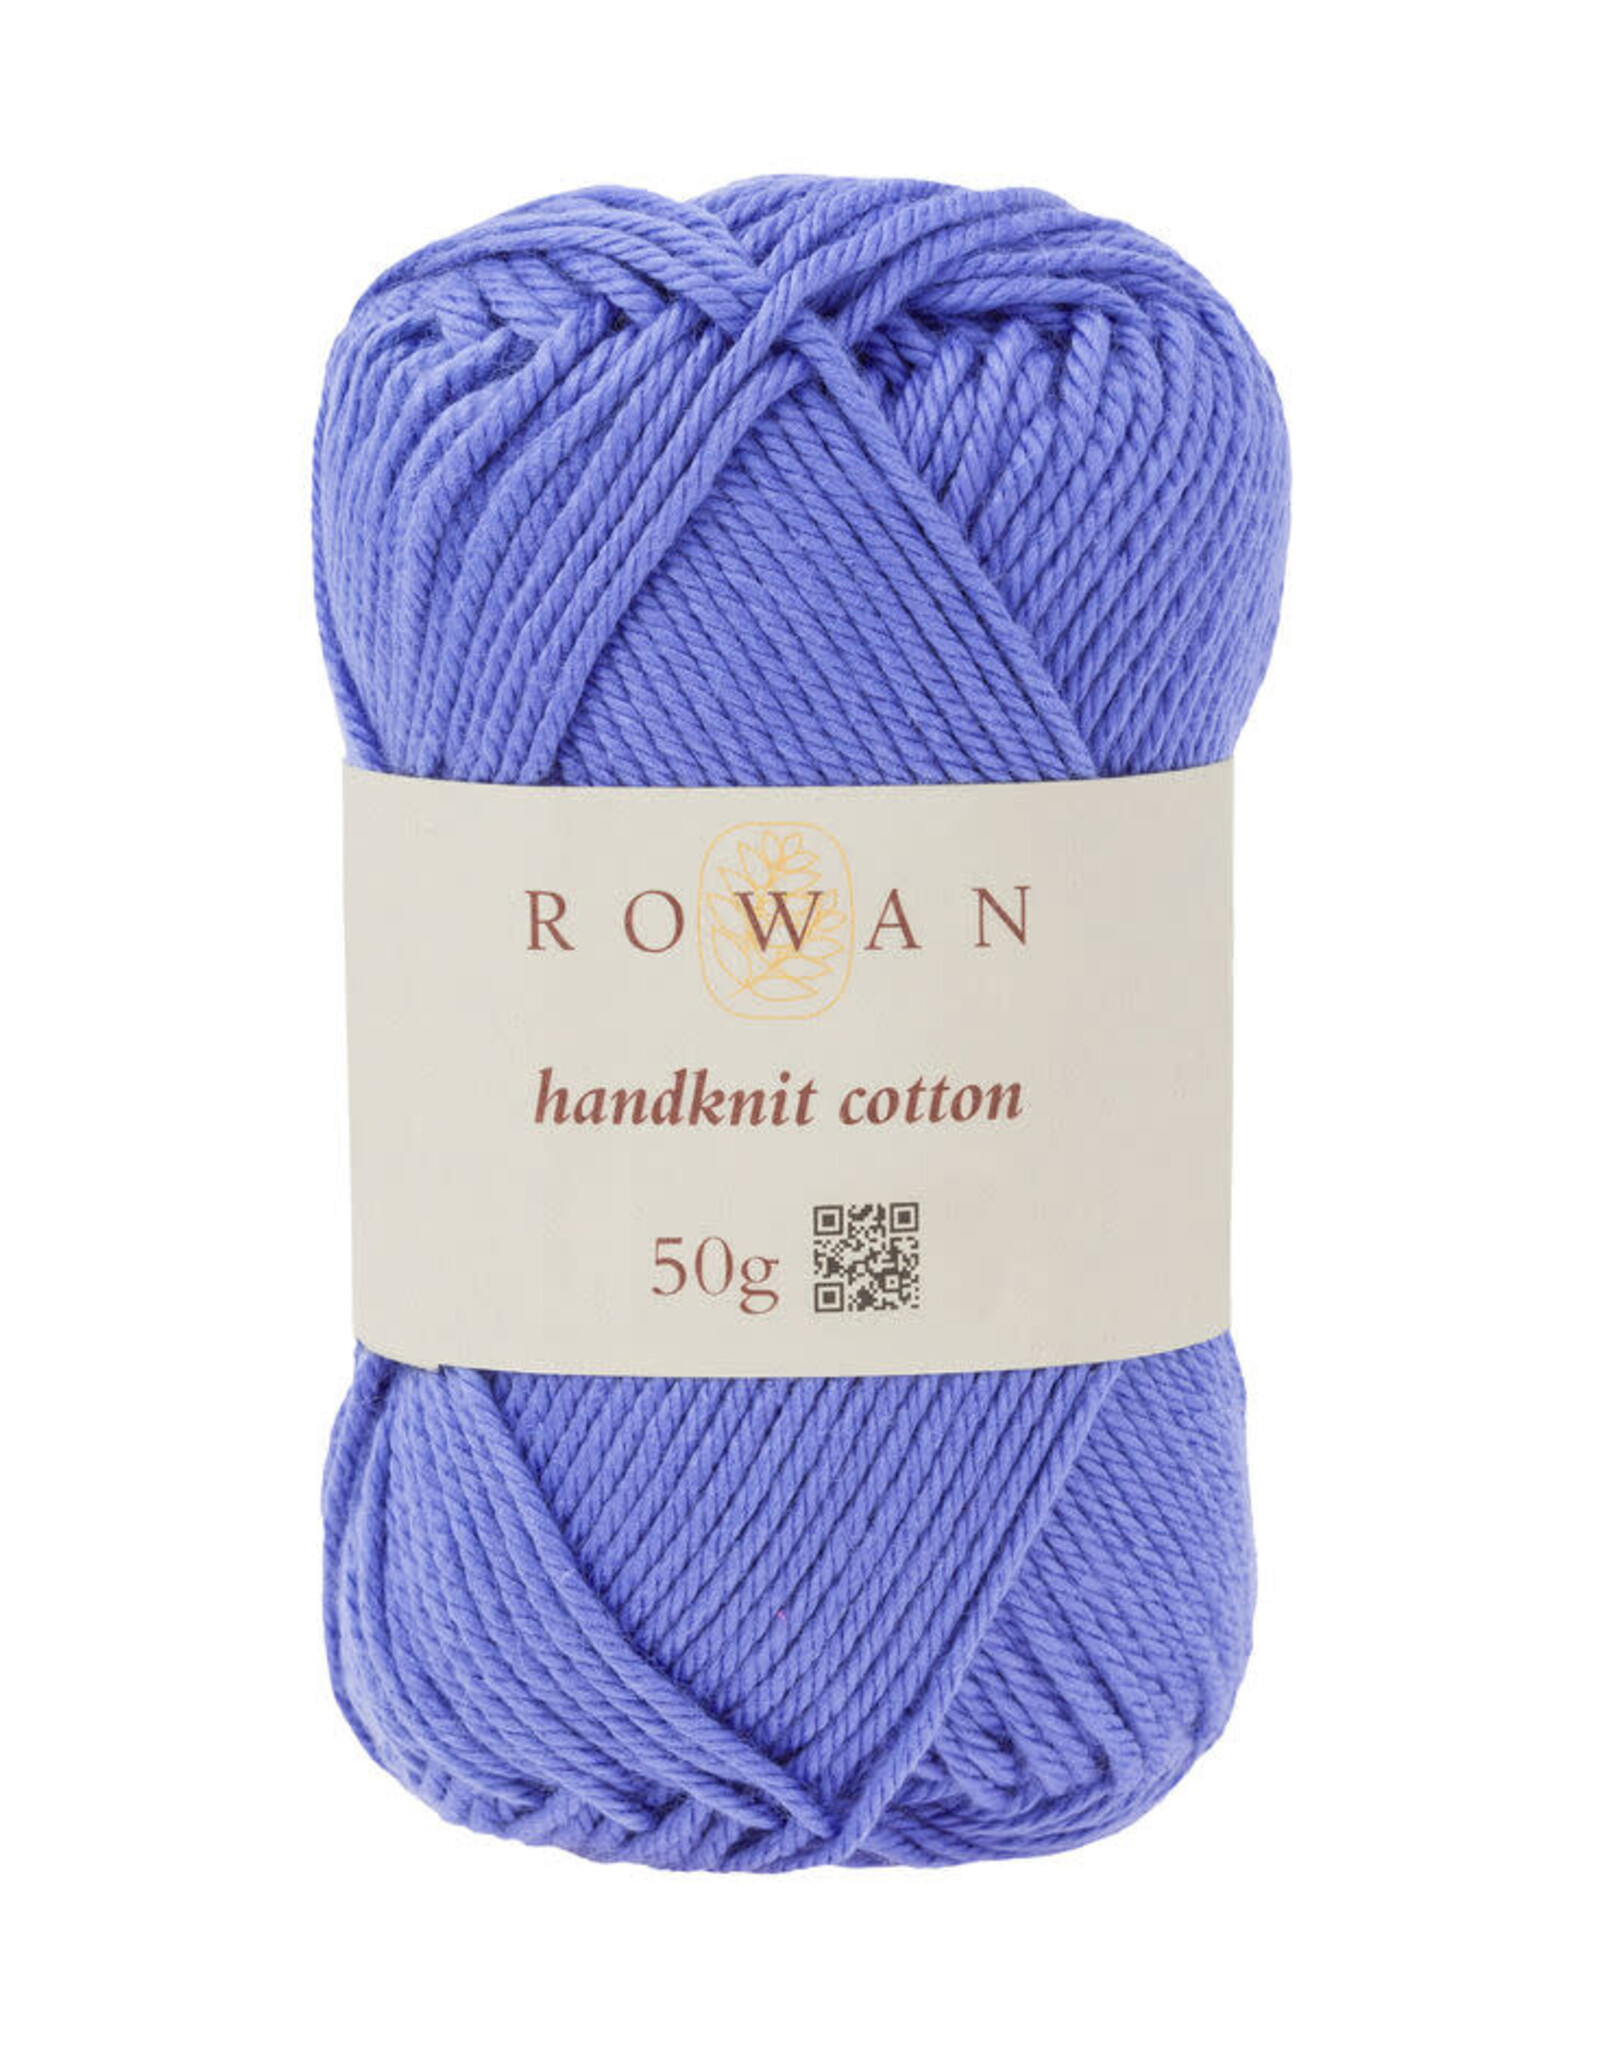 Rowan Handknit Cotton 353 violet